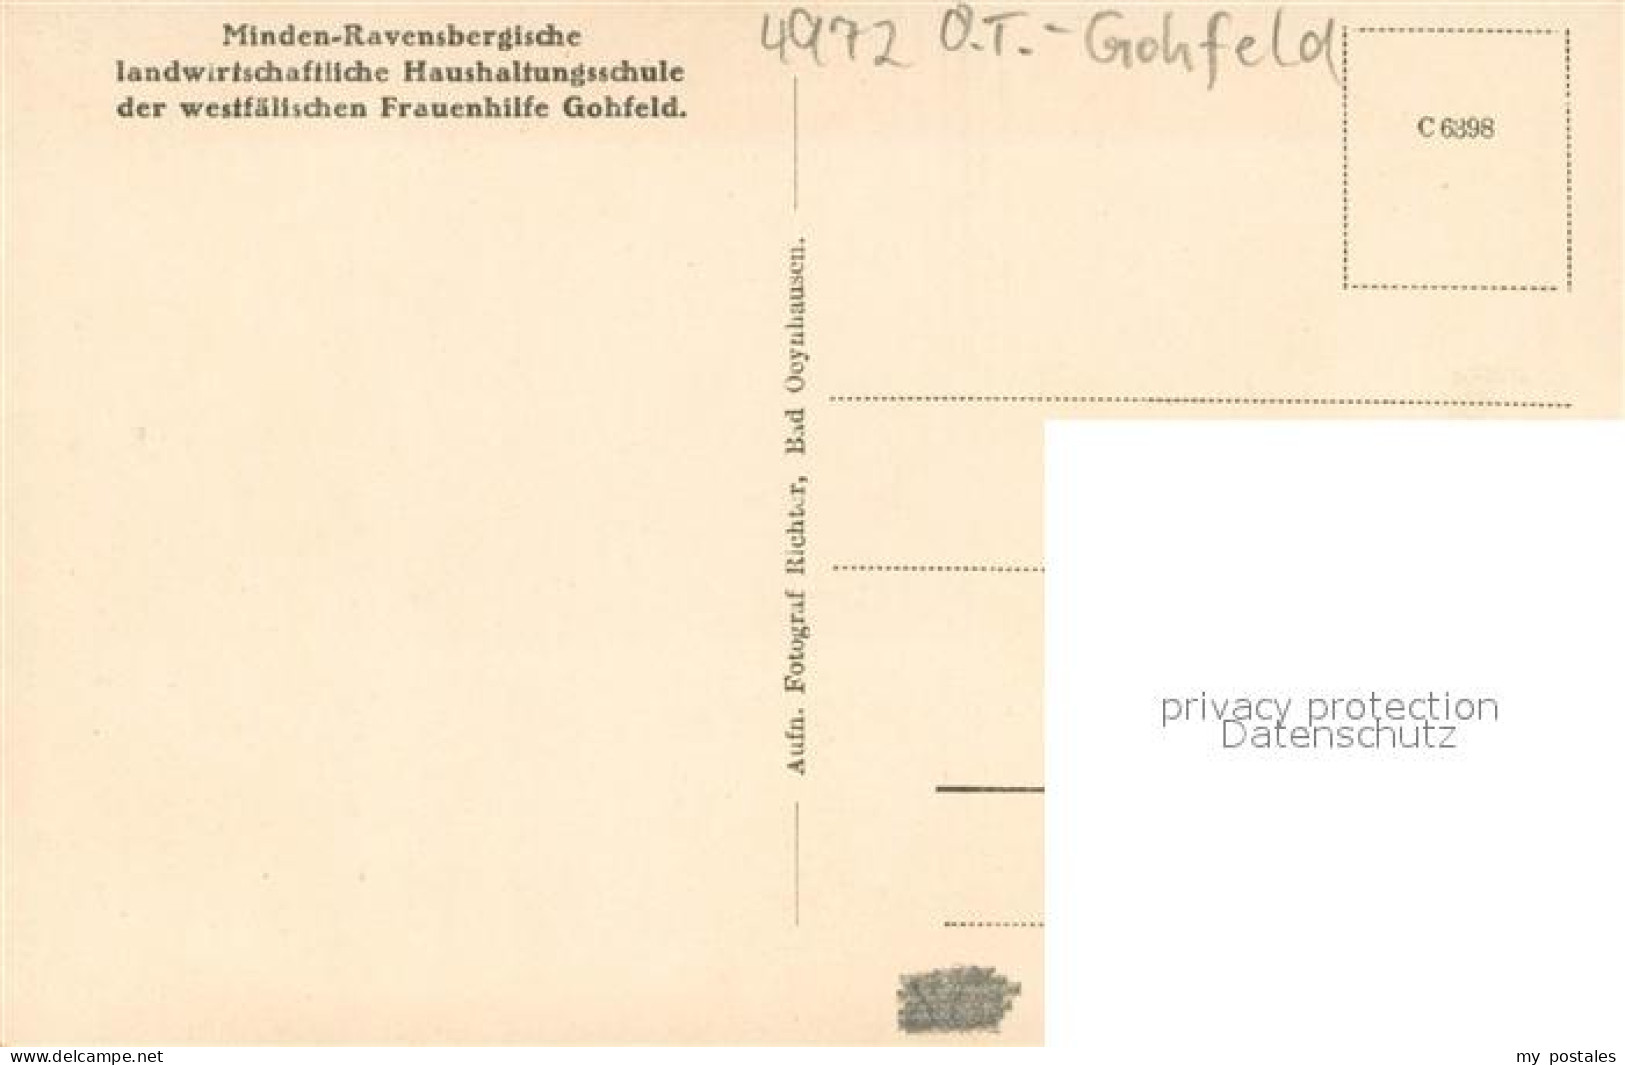 73703999 Gohfeld Herford Minden-Ravensbergische Landwirtschaftliche Haushaltungs - Zu Identifizieren